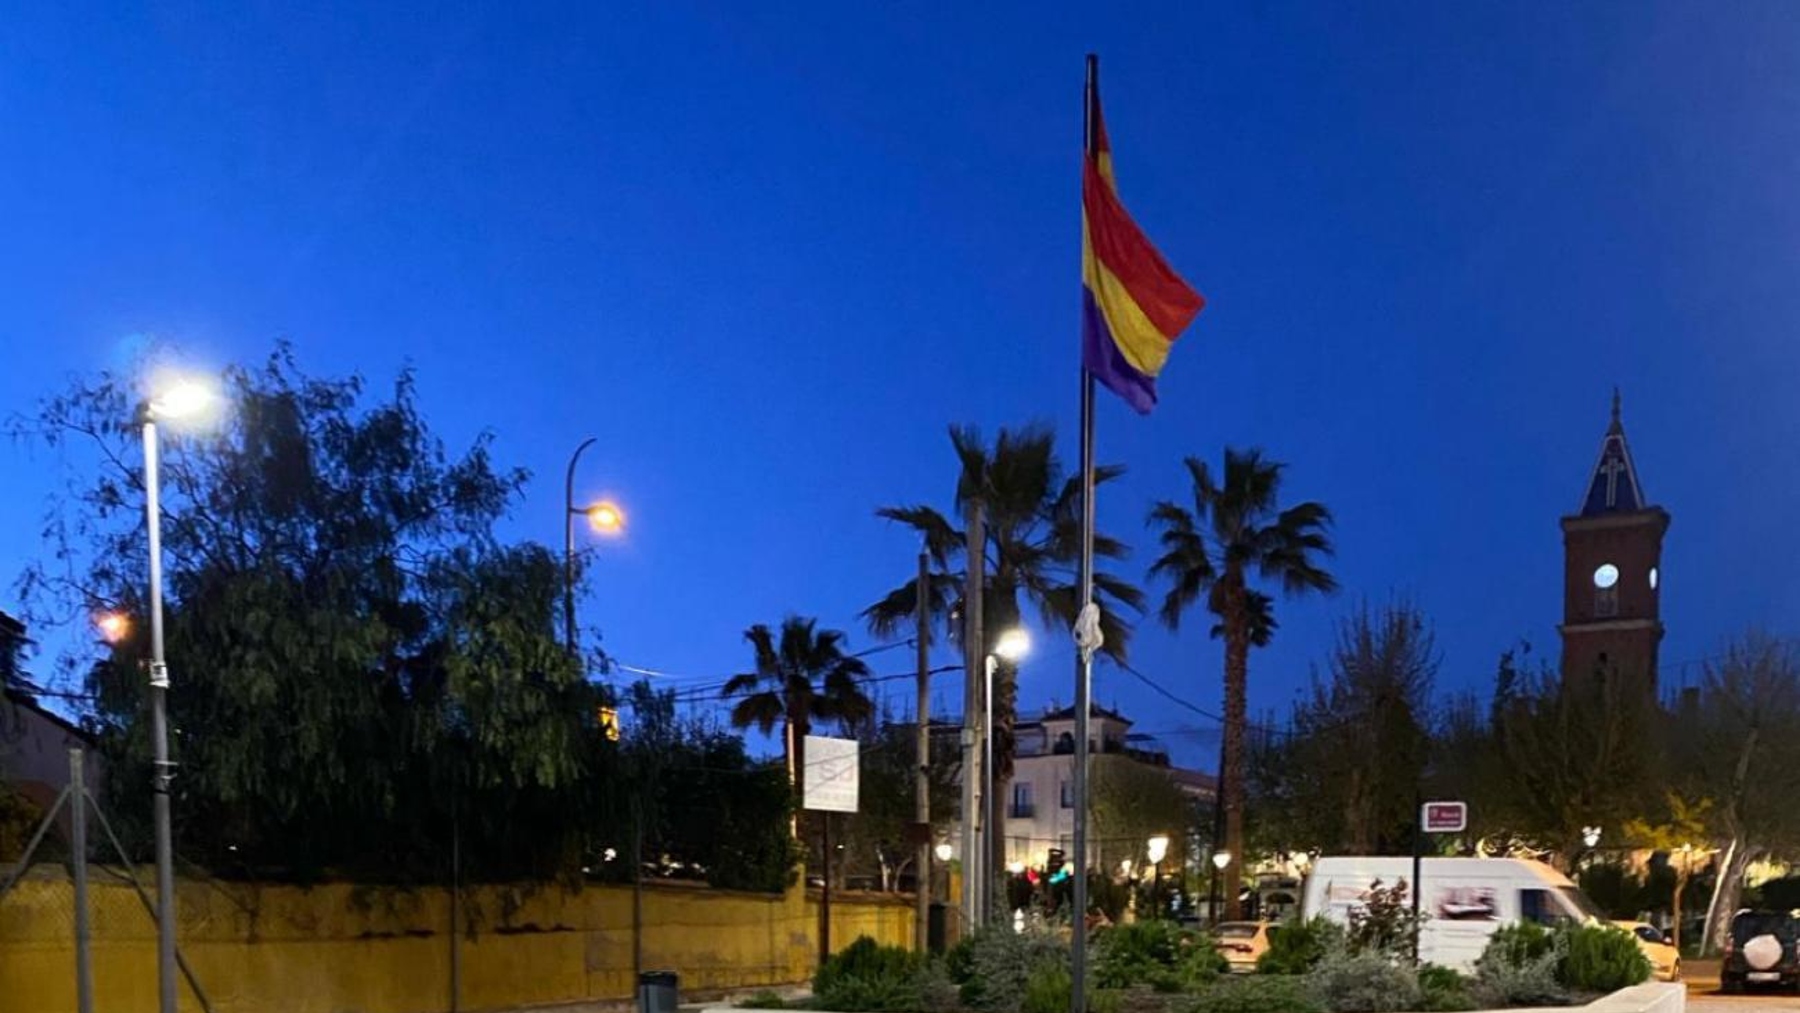 Bandera republicana izada en la plaza principal de Peñarroya-Pueblonuevo.